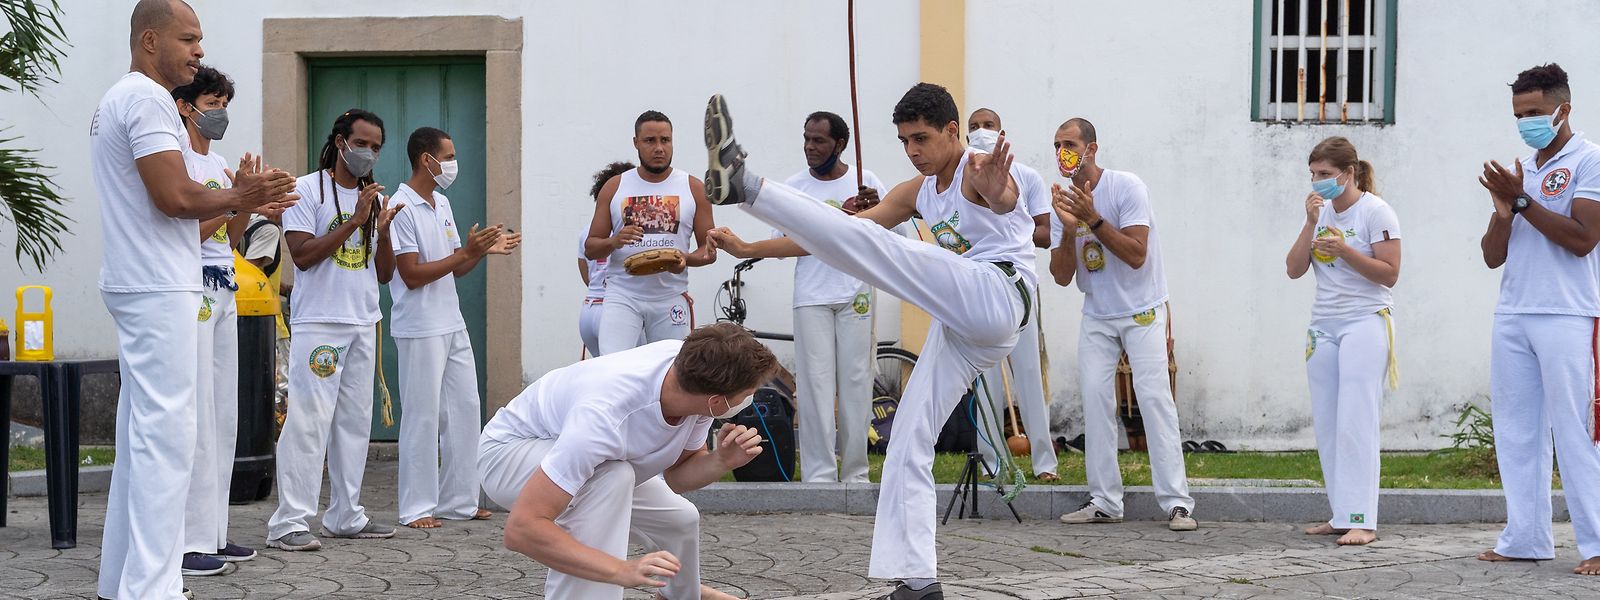 Côté sports urbains, on retrouve dans cette édition des ateliers de capoeira ou encore la slackline